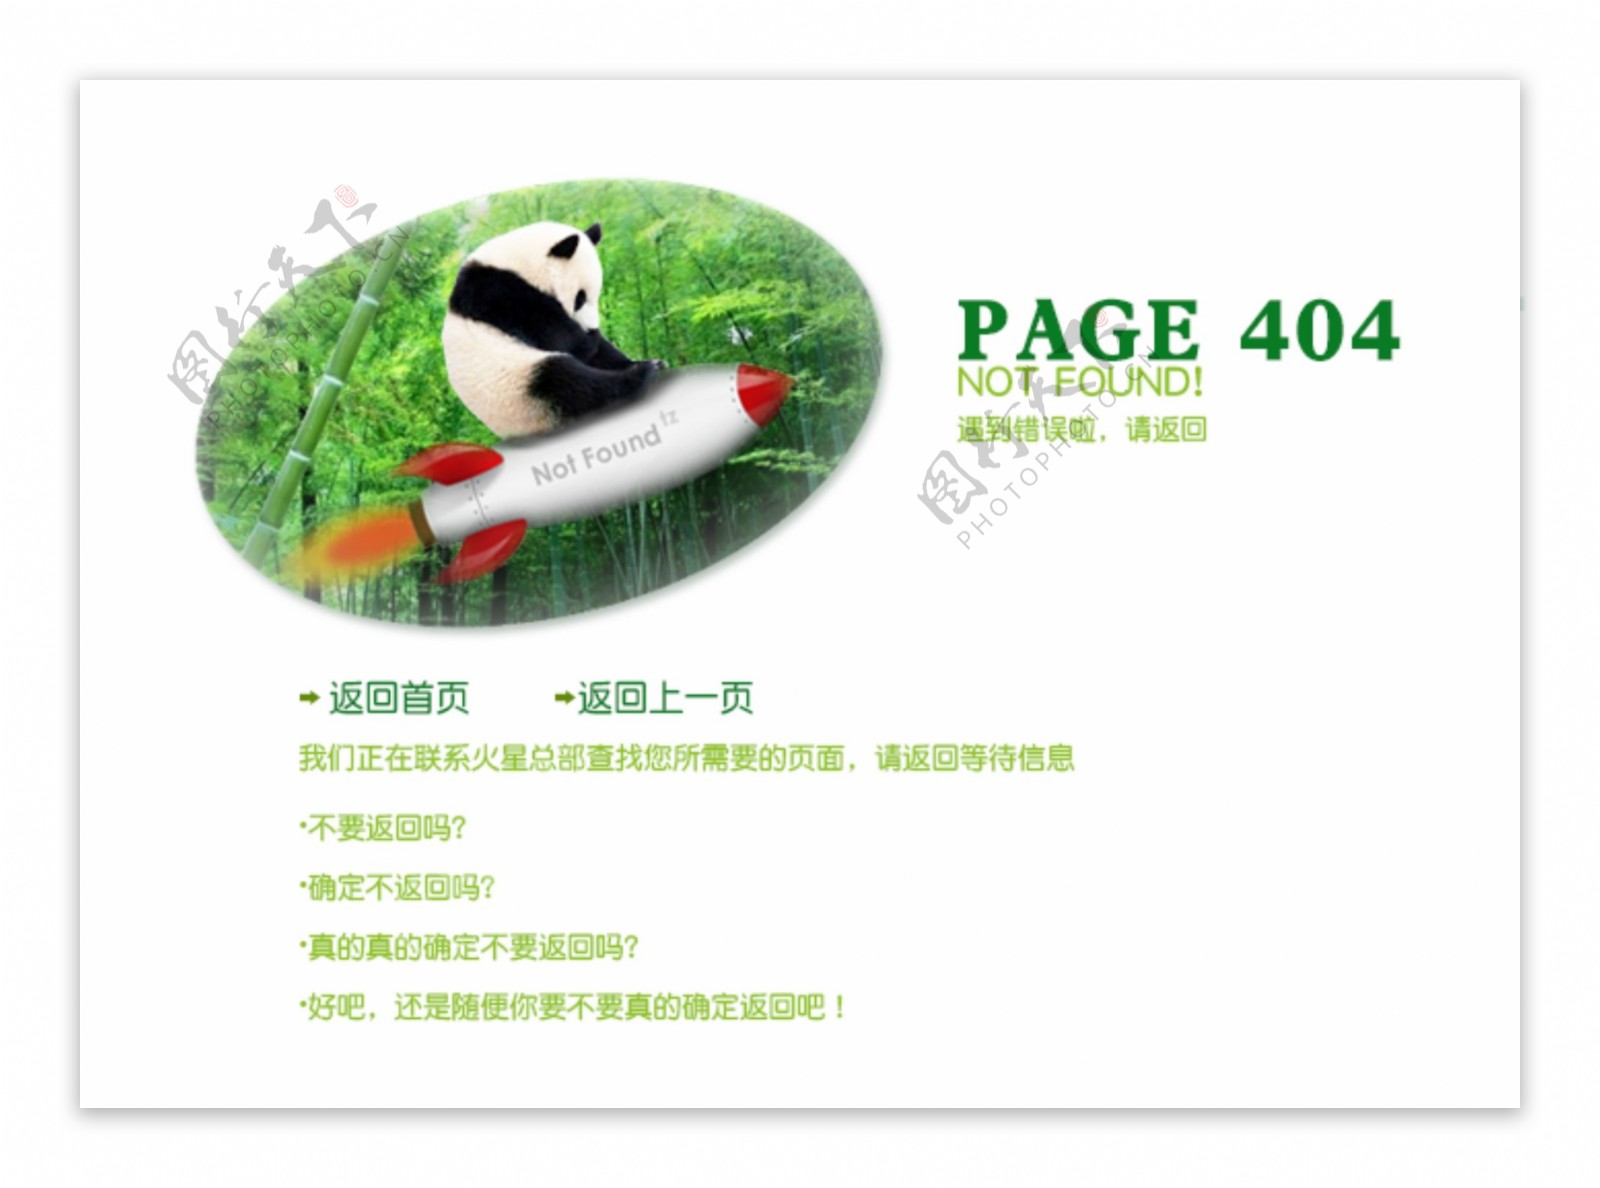 网页404错误页面图片